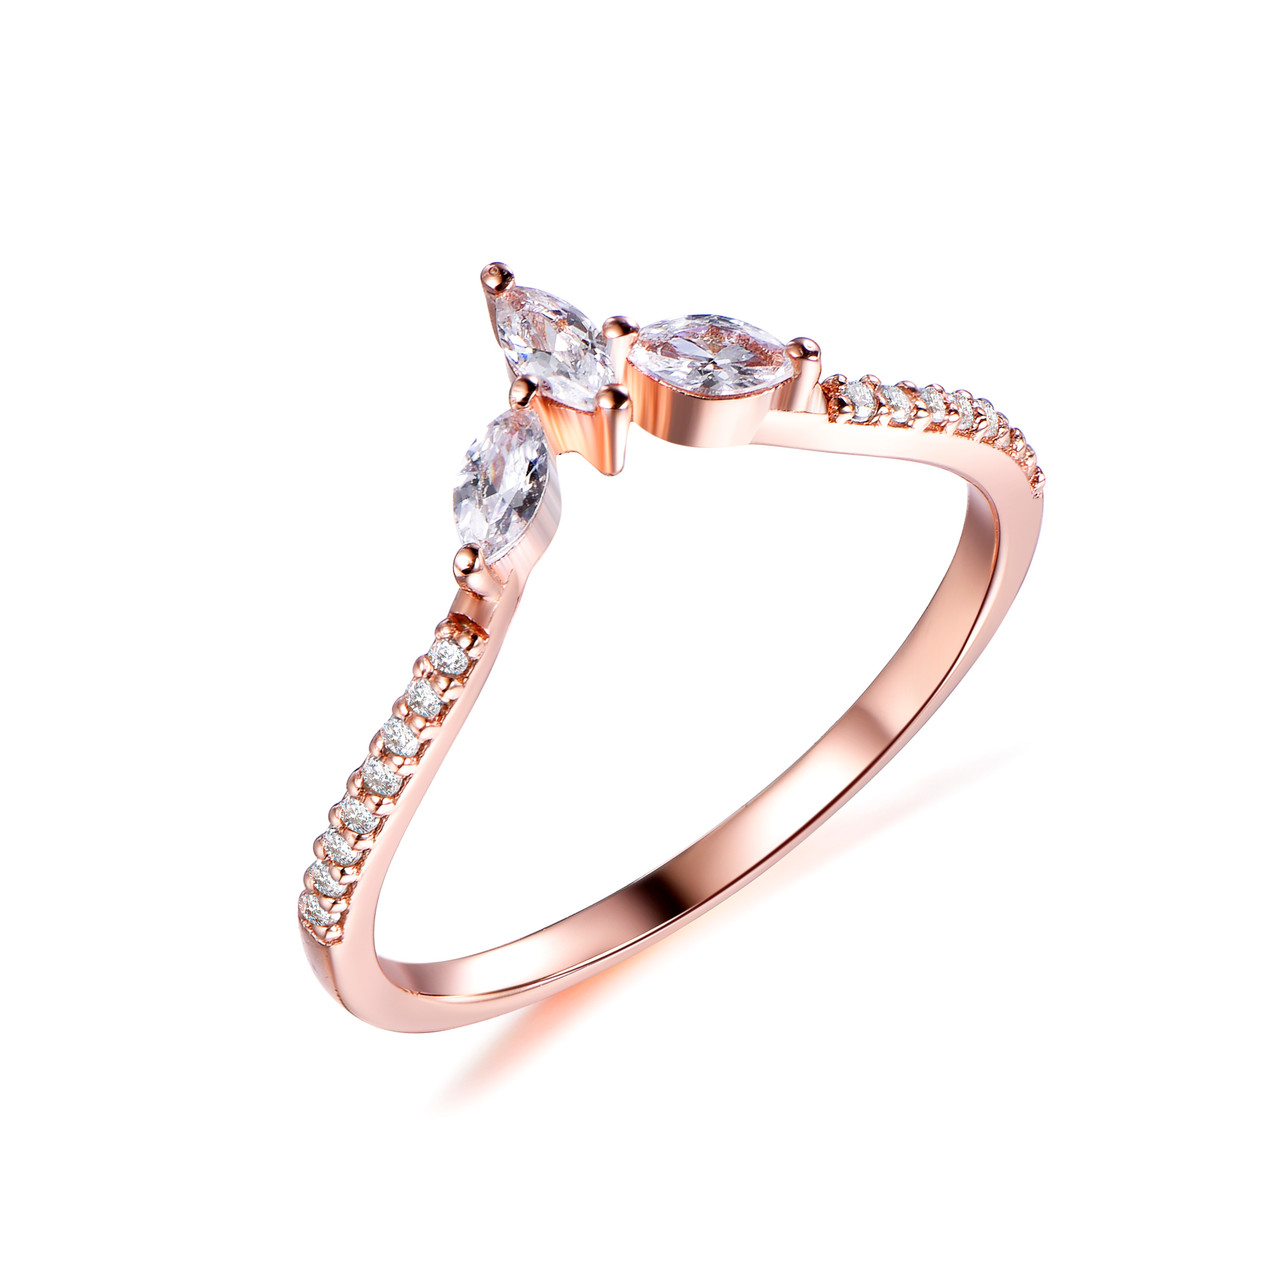 Tiara Marquise Full cut Diamond Wedding Ring, Unique